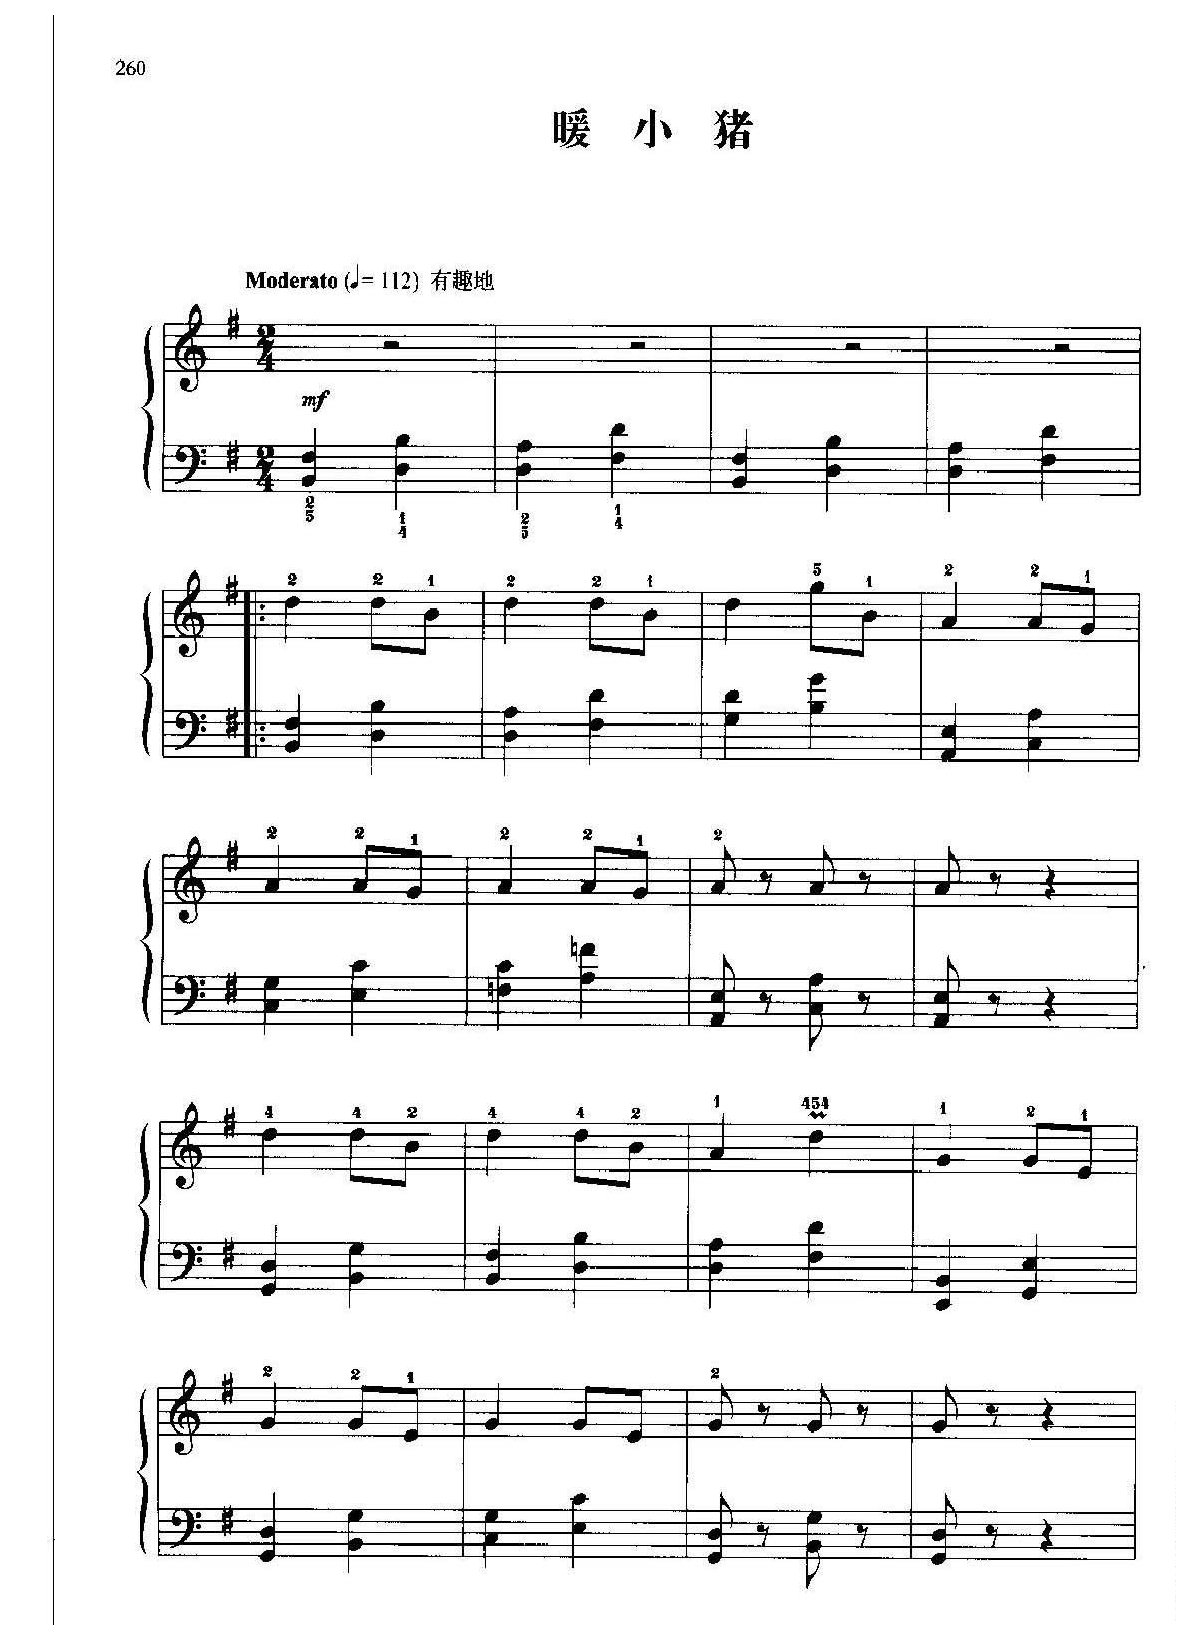 中国民歌钢琴小曲《暖小猪》